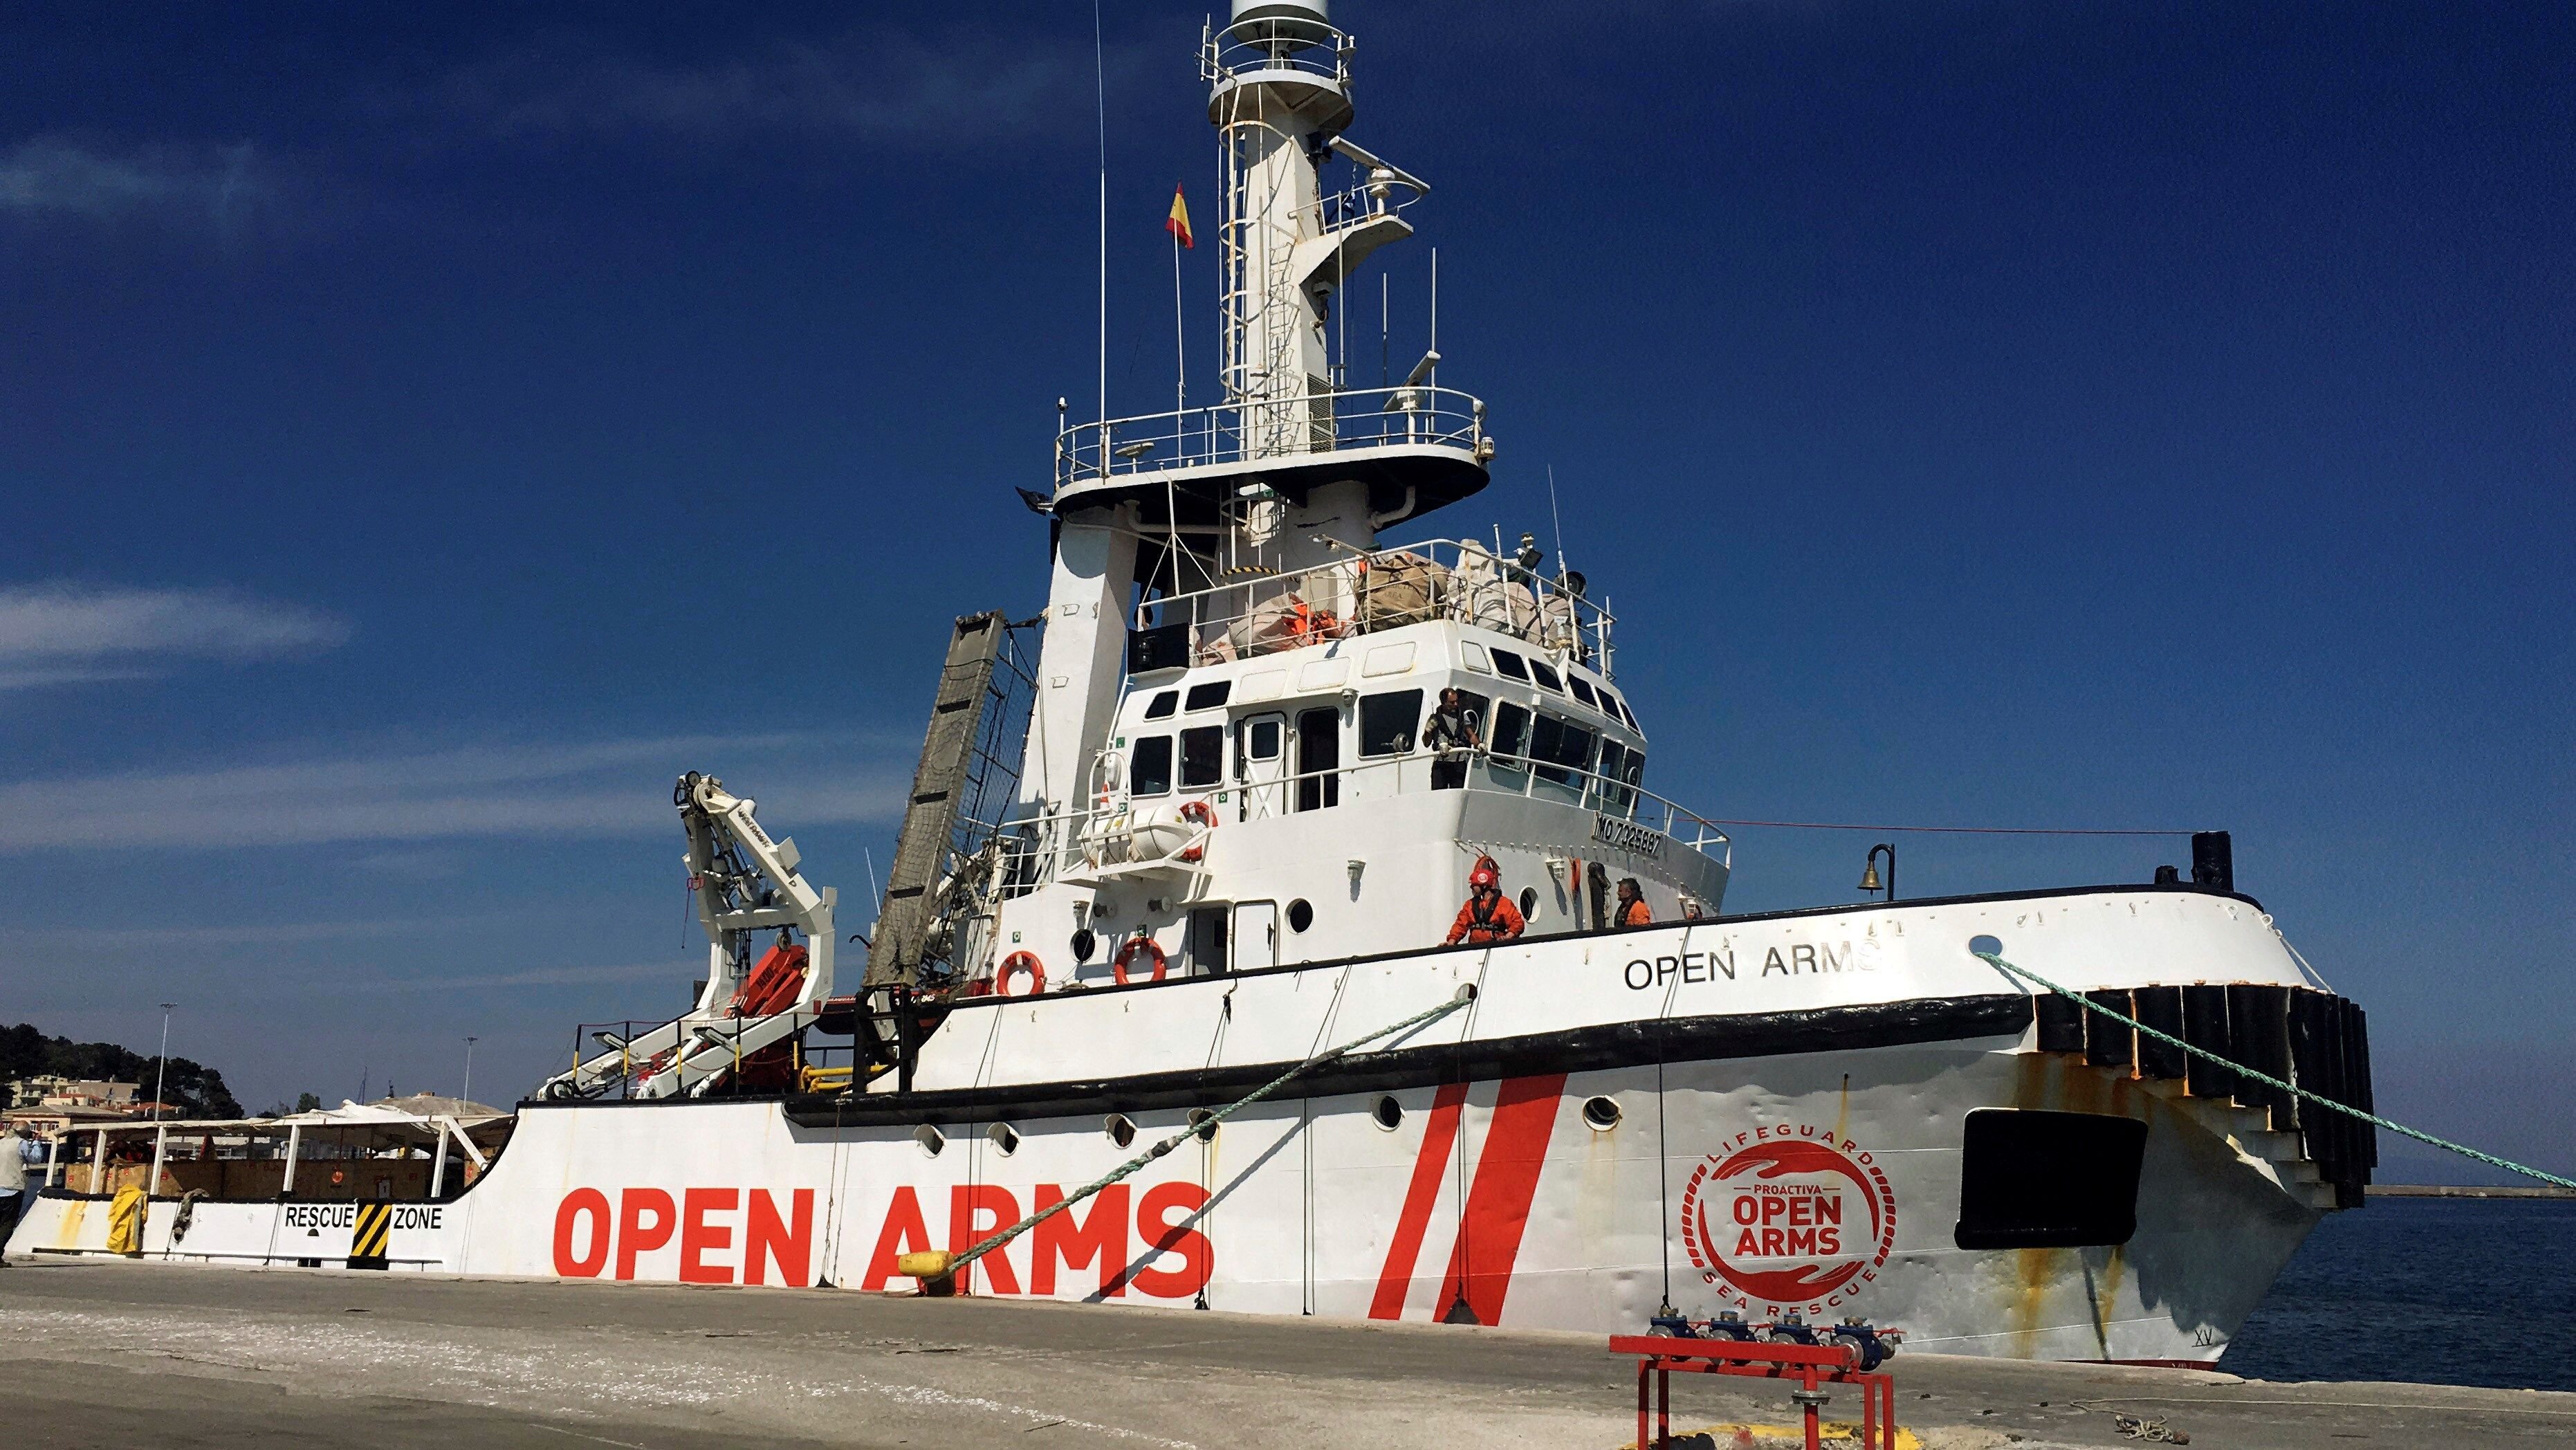 El barco de Open Arms retoma los rescates en el Mediterráneo central